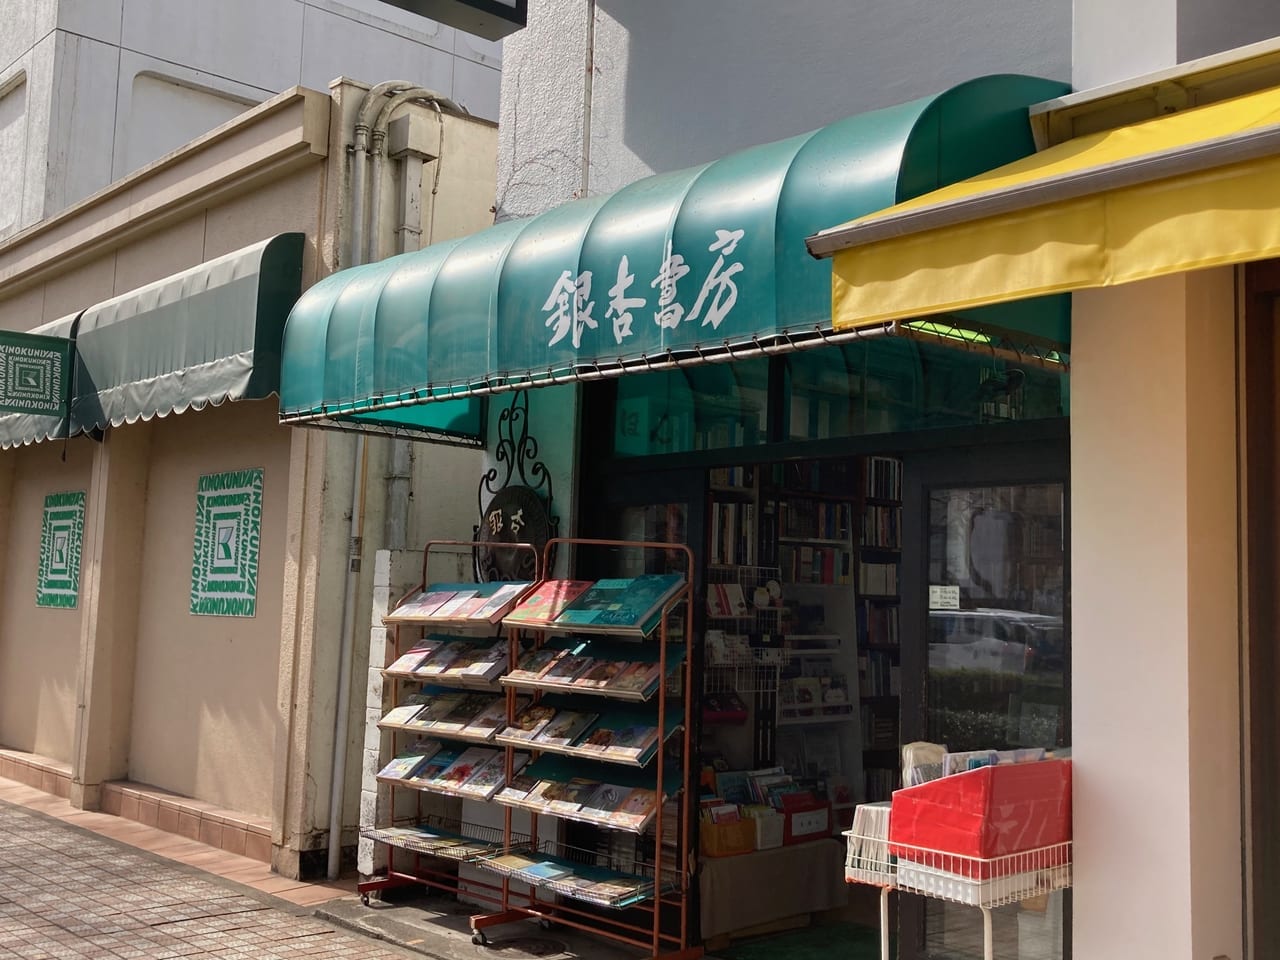 ショック・・大学通りにある洋書専門店『銀杏書房』が2月末で閉店するようです。